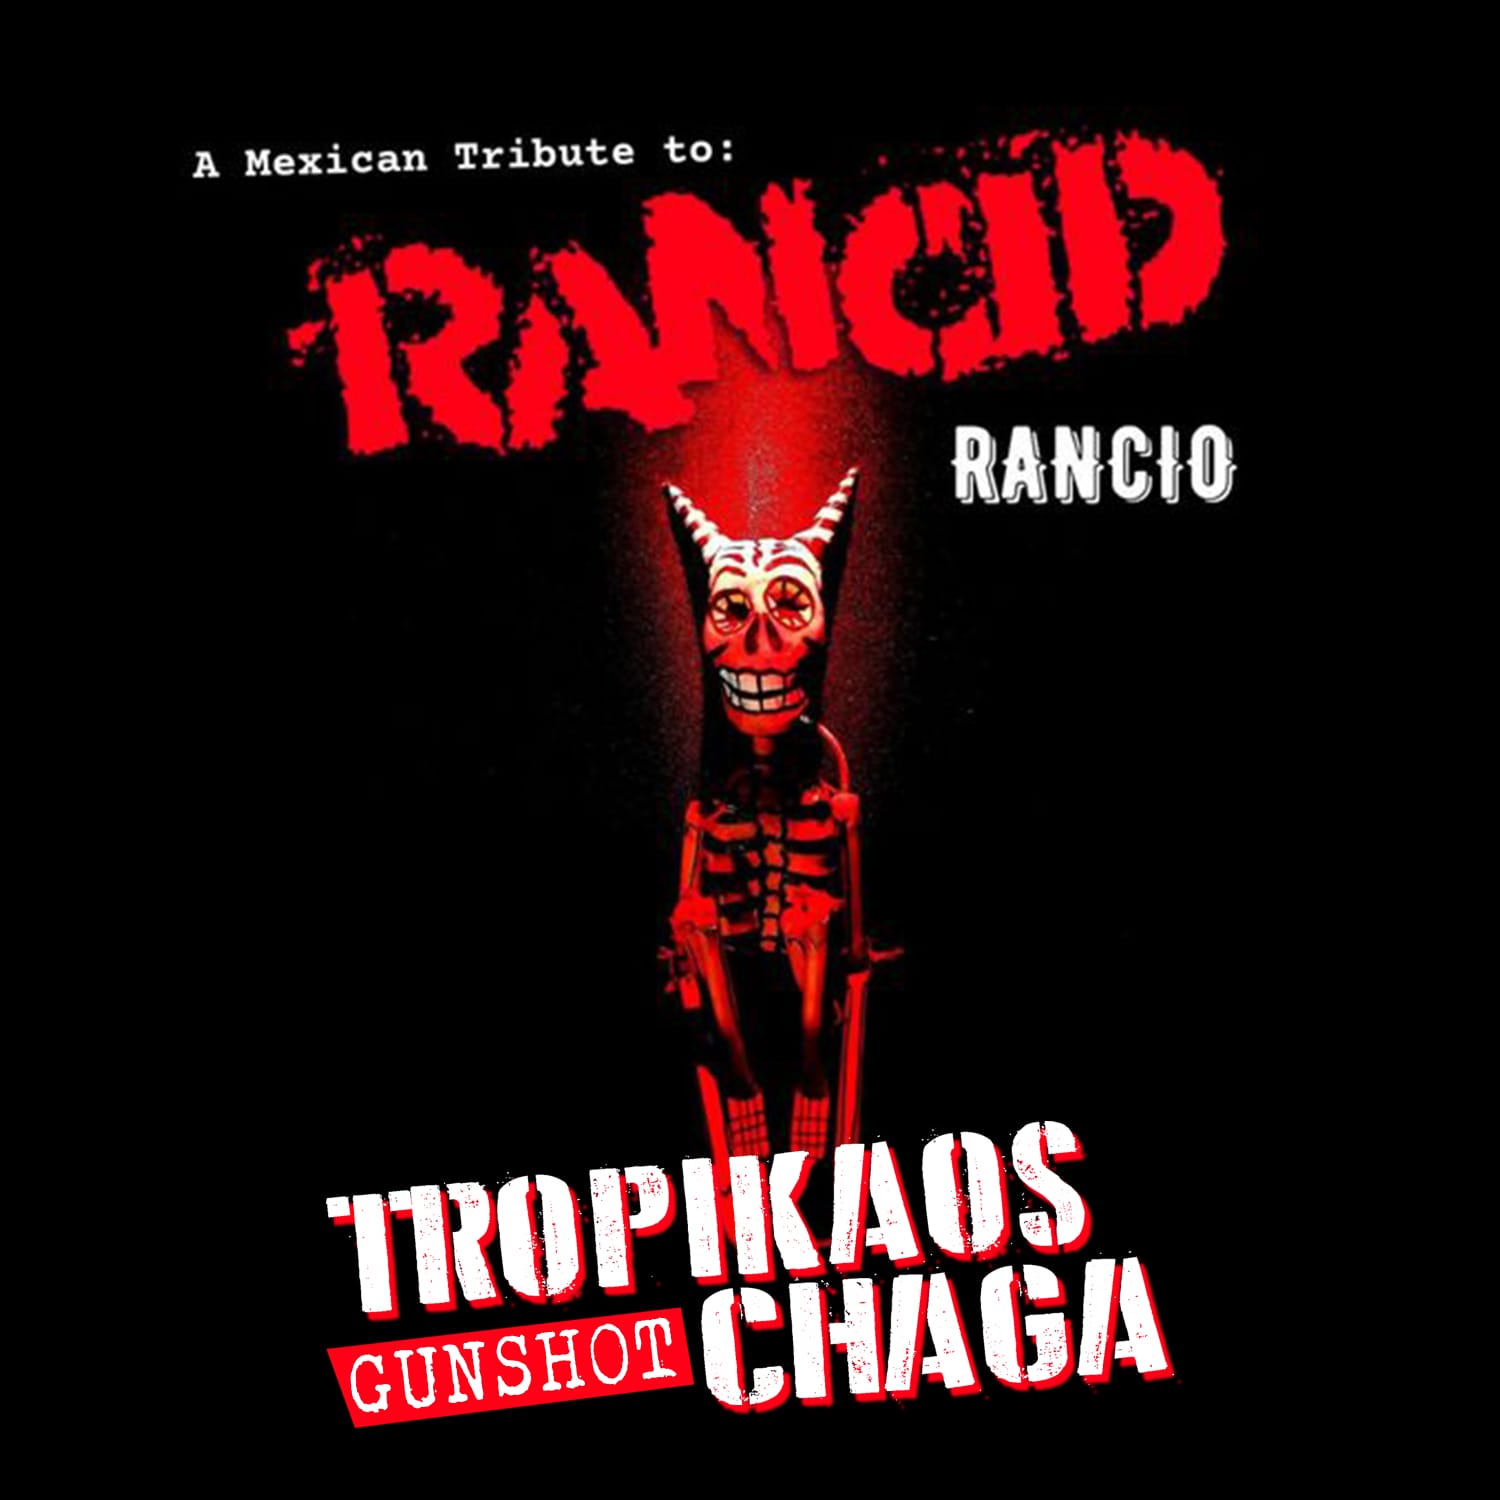 Se ha lanzado “Rancio” a Mexican tribute to Rancid, con la participación de Tropikaos Chaga. 